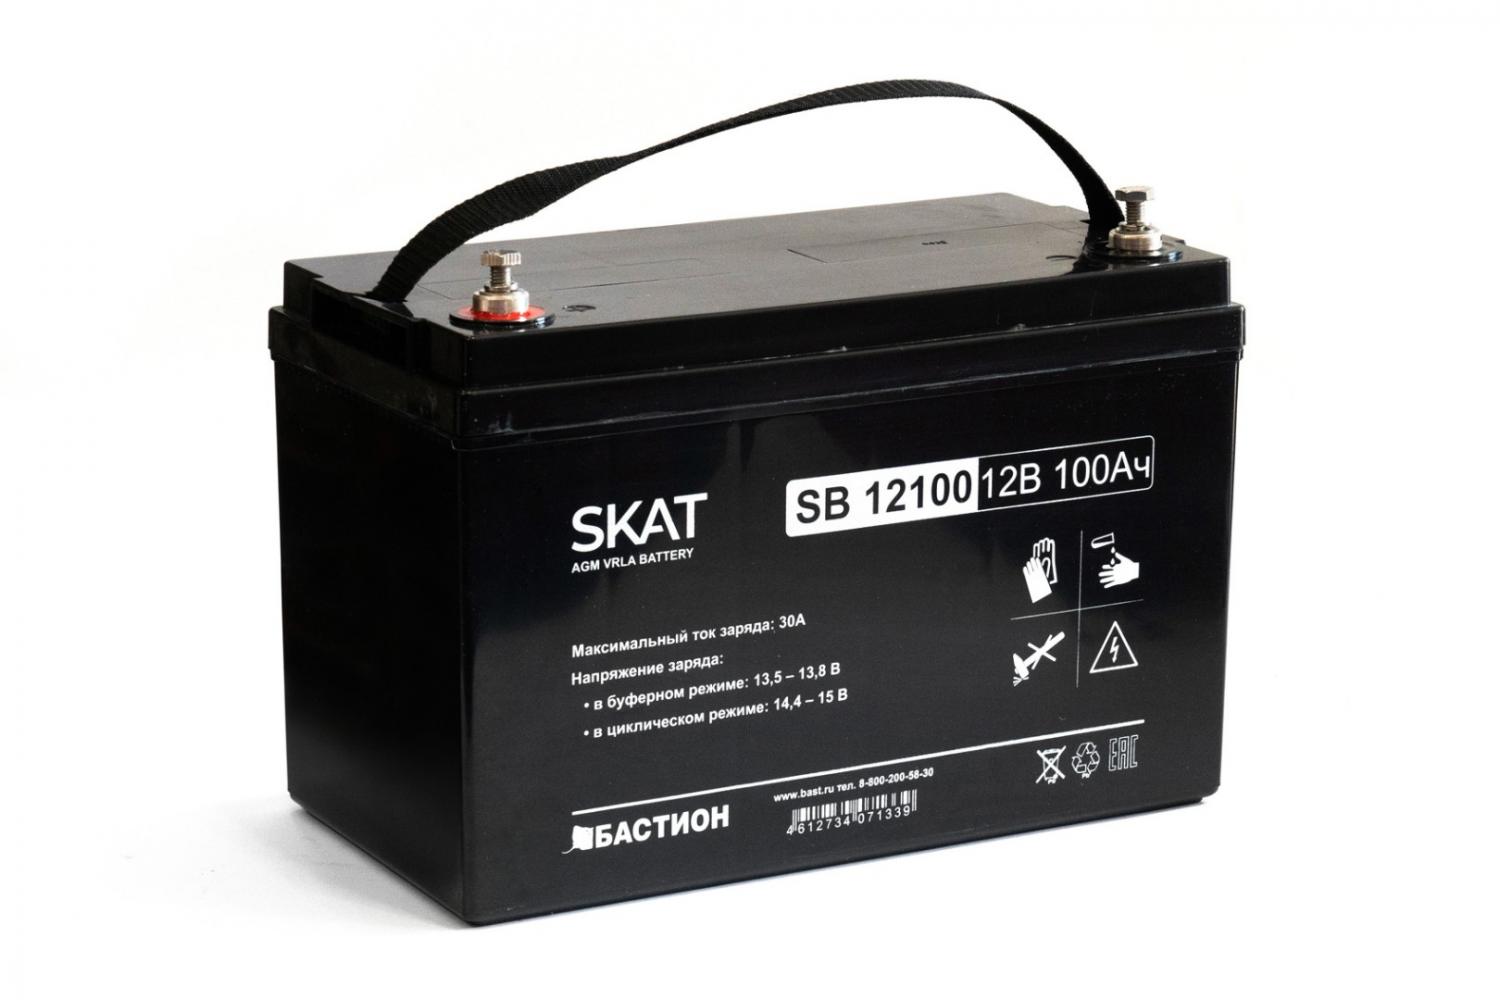 Все Бастион SKAT SB 12100 акб свинцово-кислотная тип agm 12v видеонаблюдения в магазине Vidos Group